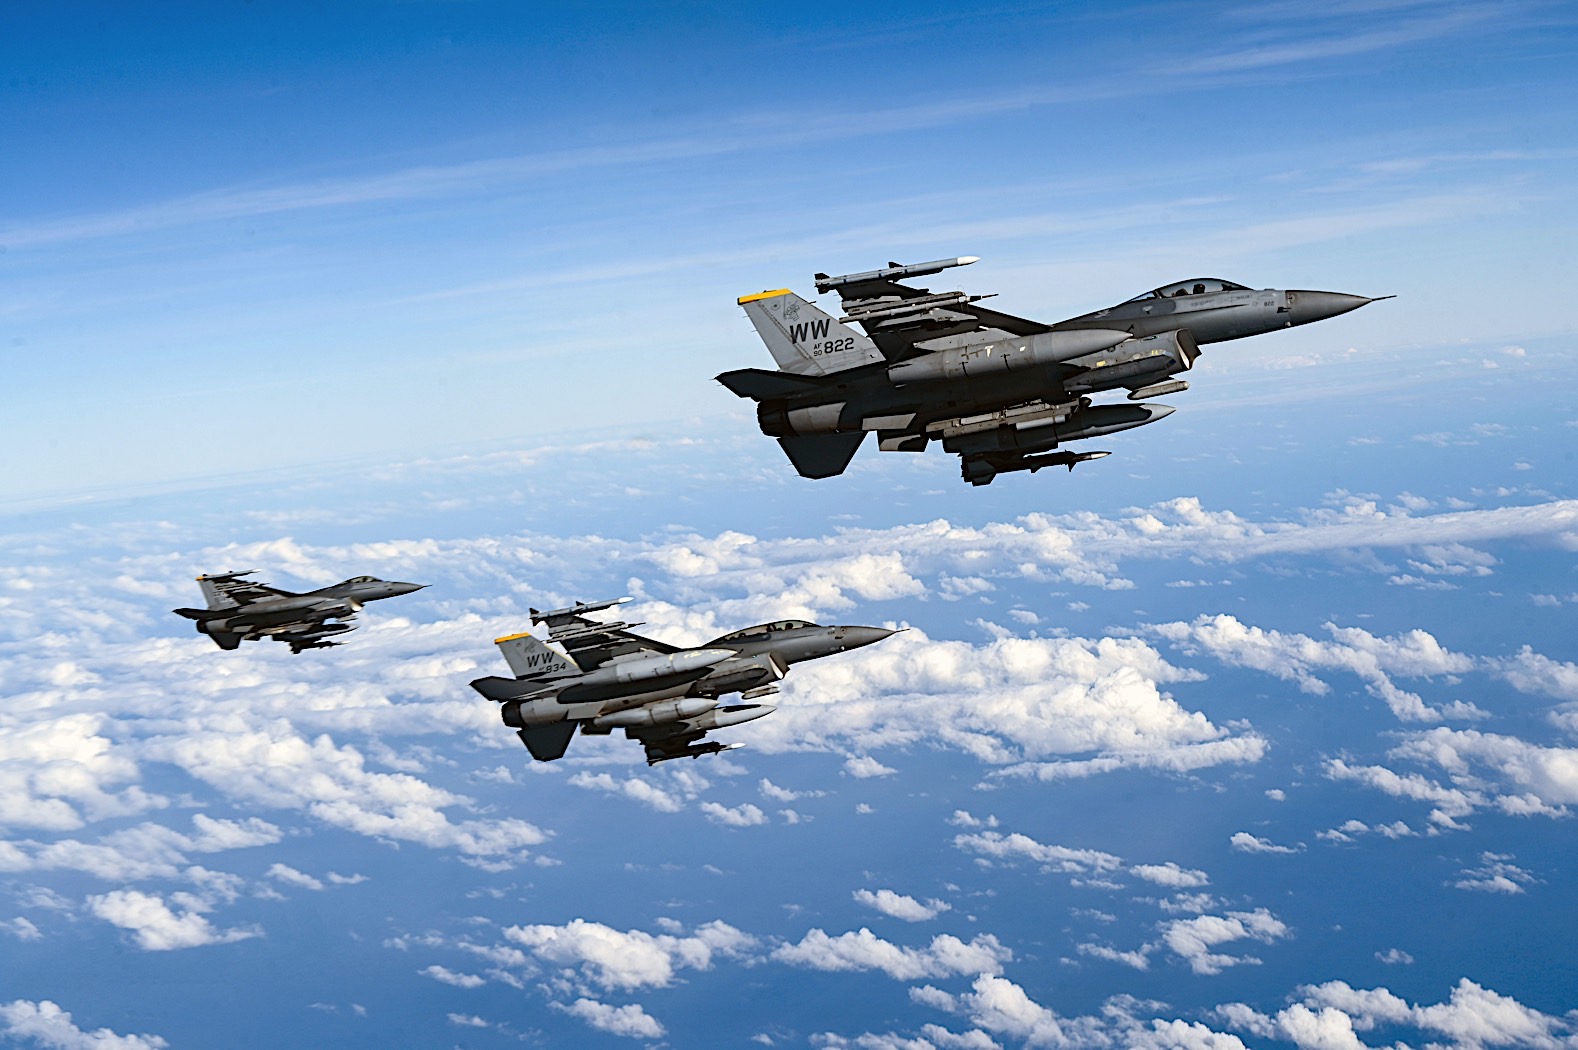 Ukraina będzie mogła otrzymać myśliwce F-16 Fighting Falcon po modernizacji lotnisk